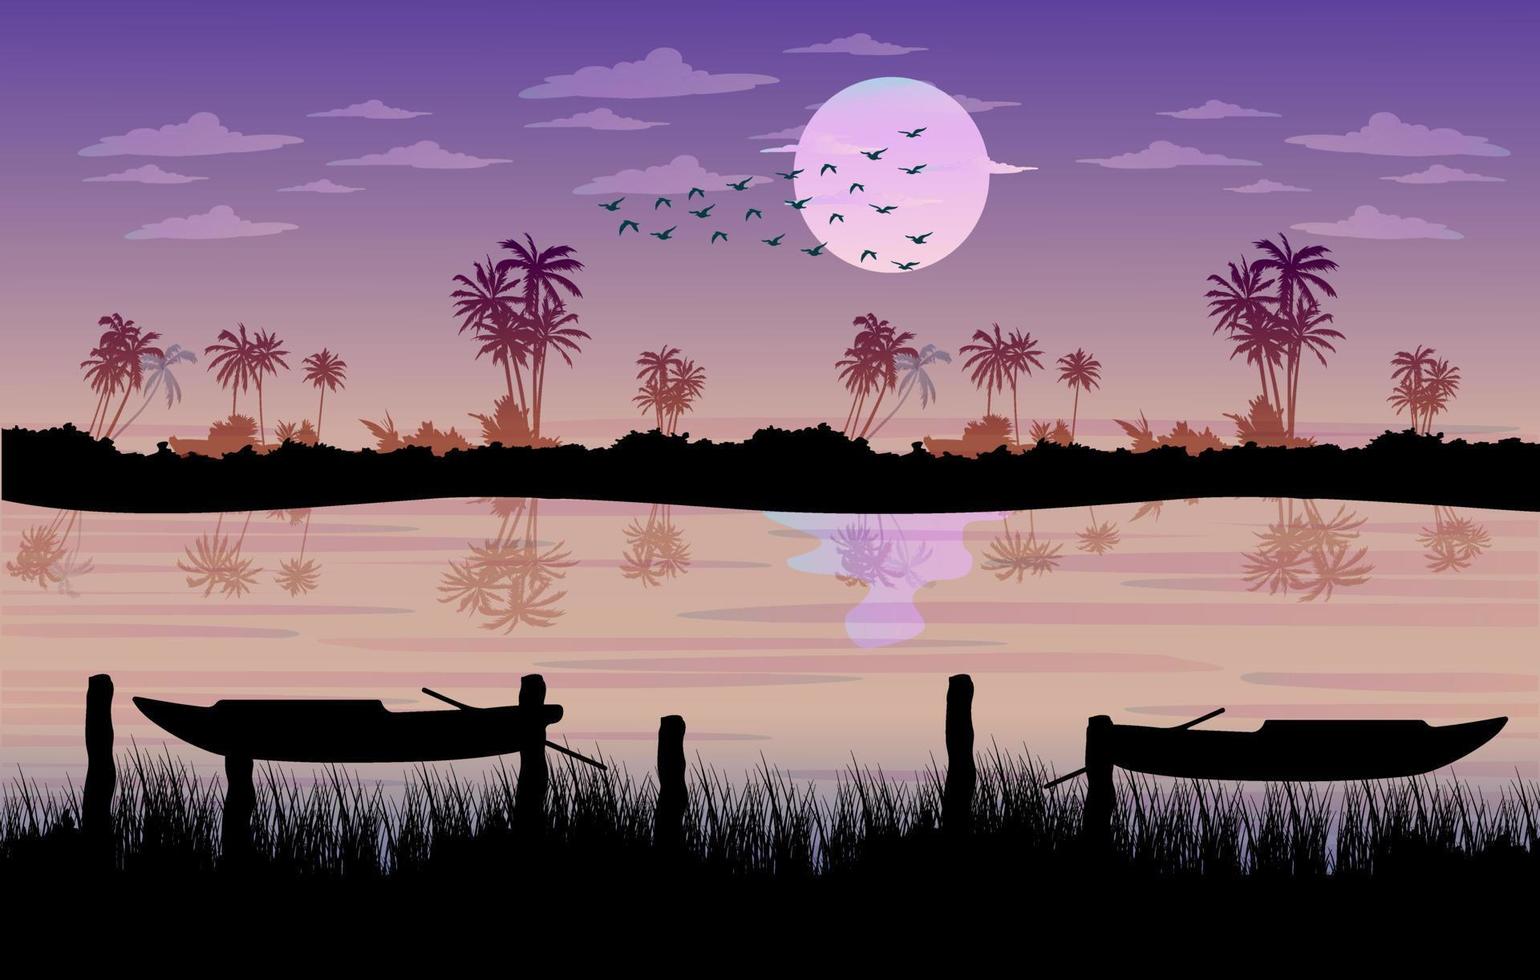 pueblo paisaje agua luz de la luna libre de fondo, fondo de paisaje nocturno, árbol en el lago, hermoso paisaje suburbano oscuro vector